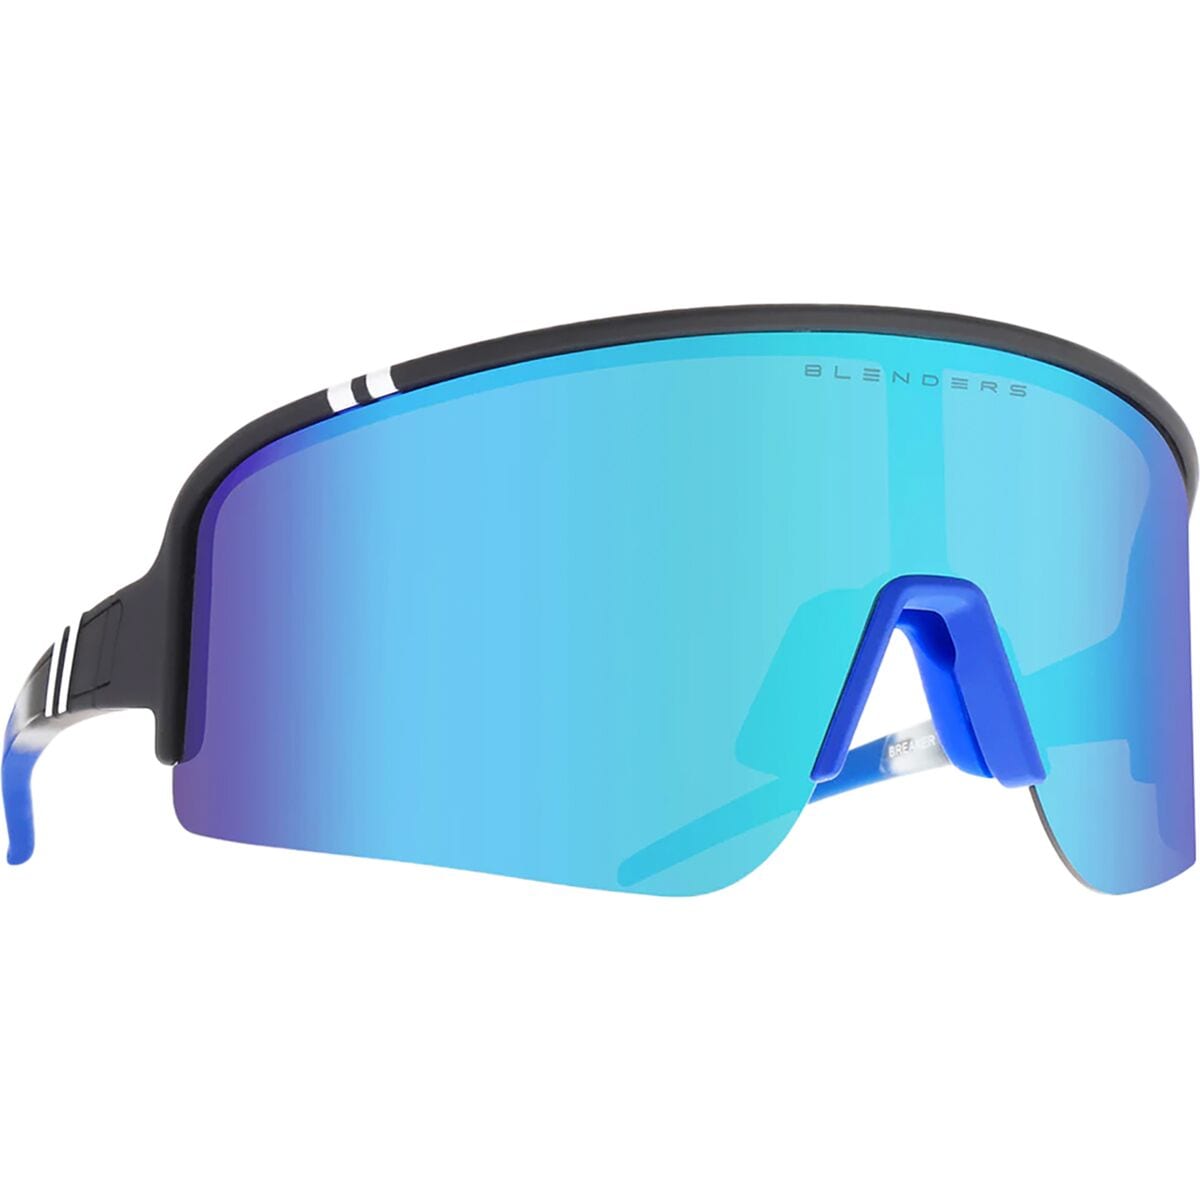 Blenders Eyewear Eclipse X2 Polarized Sunglasses Breaker Point, One Size - Men's